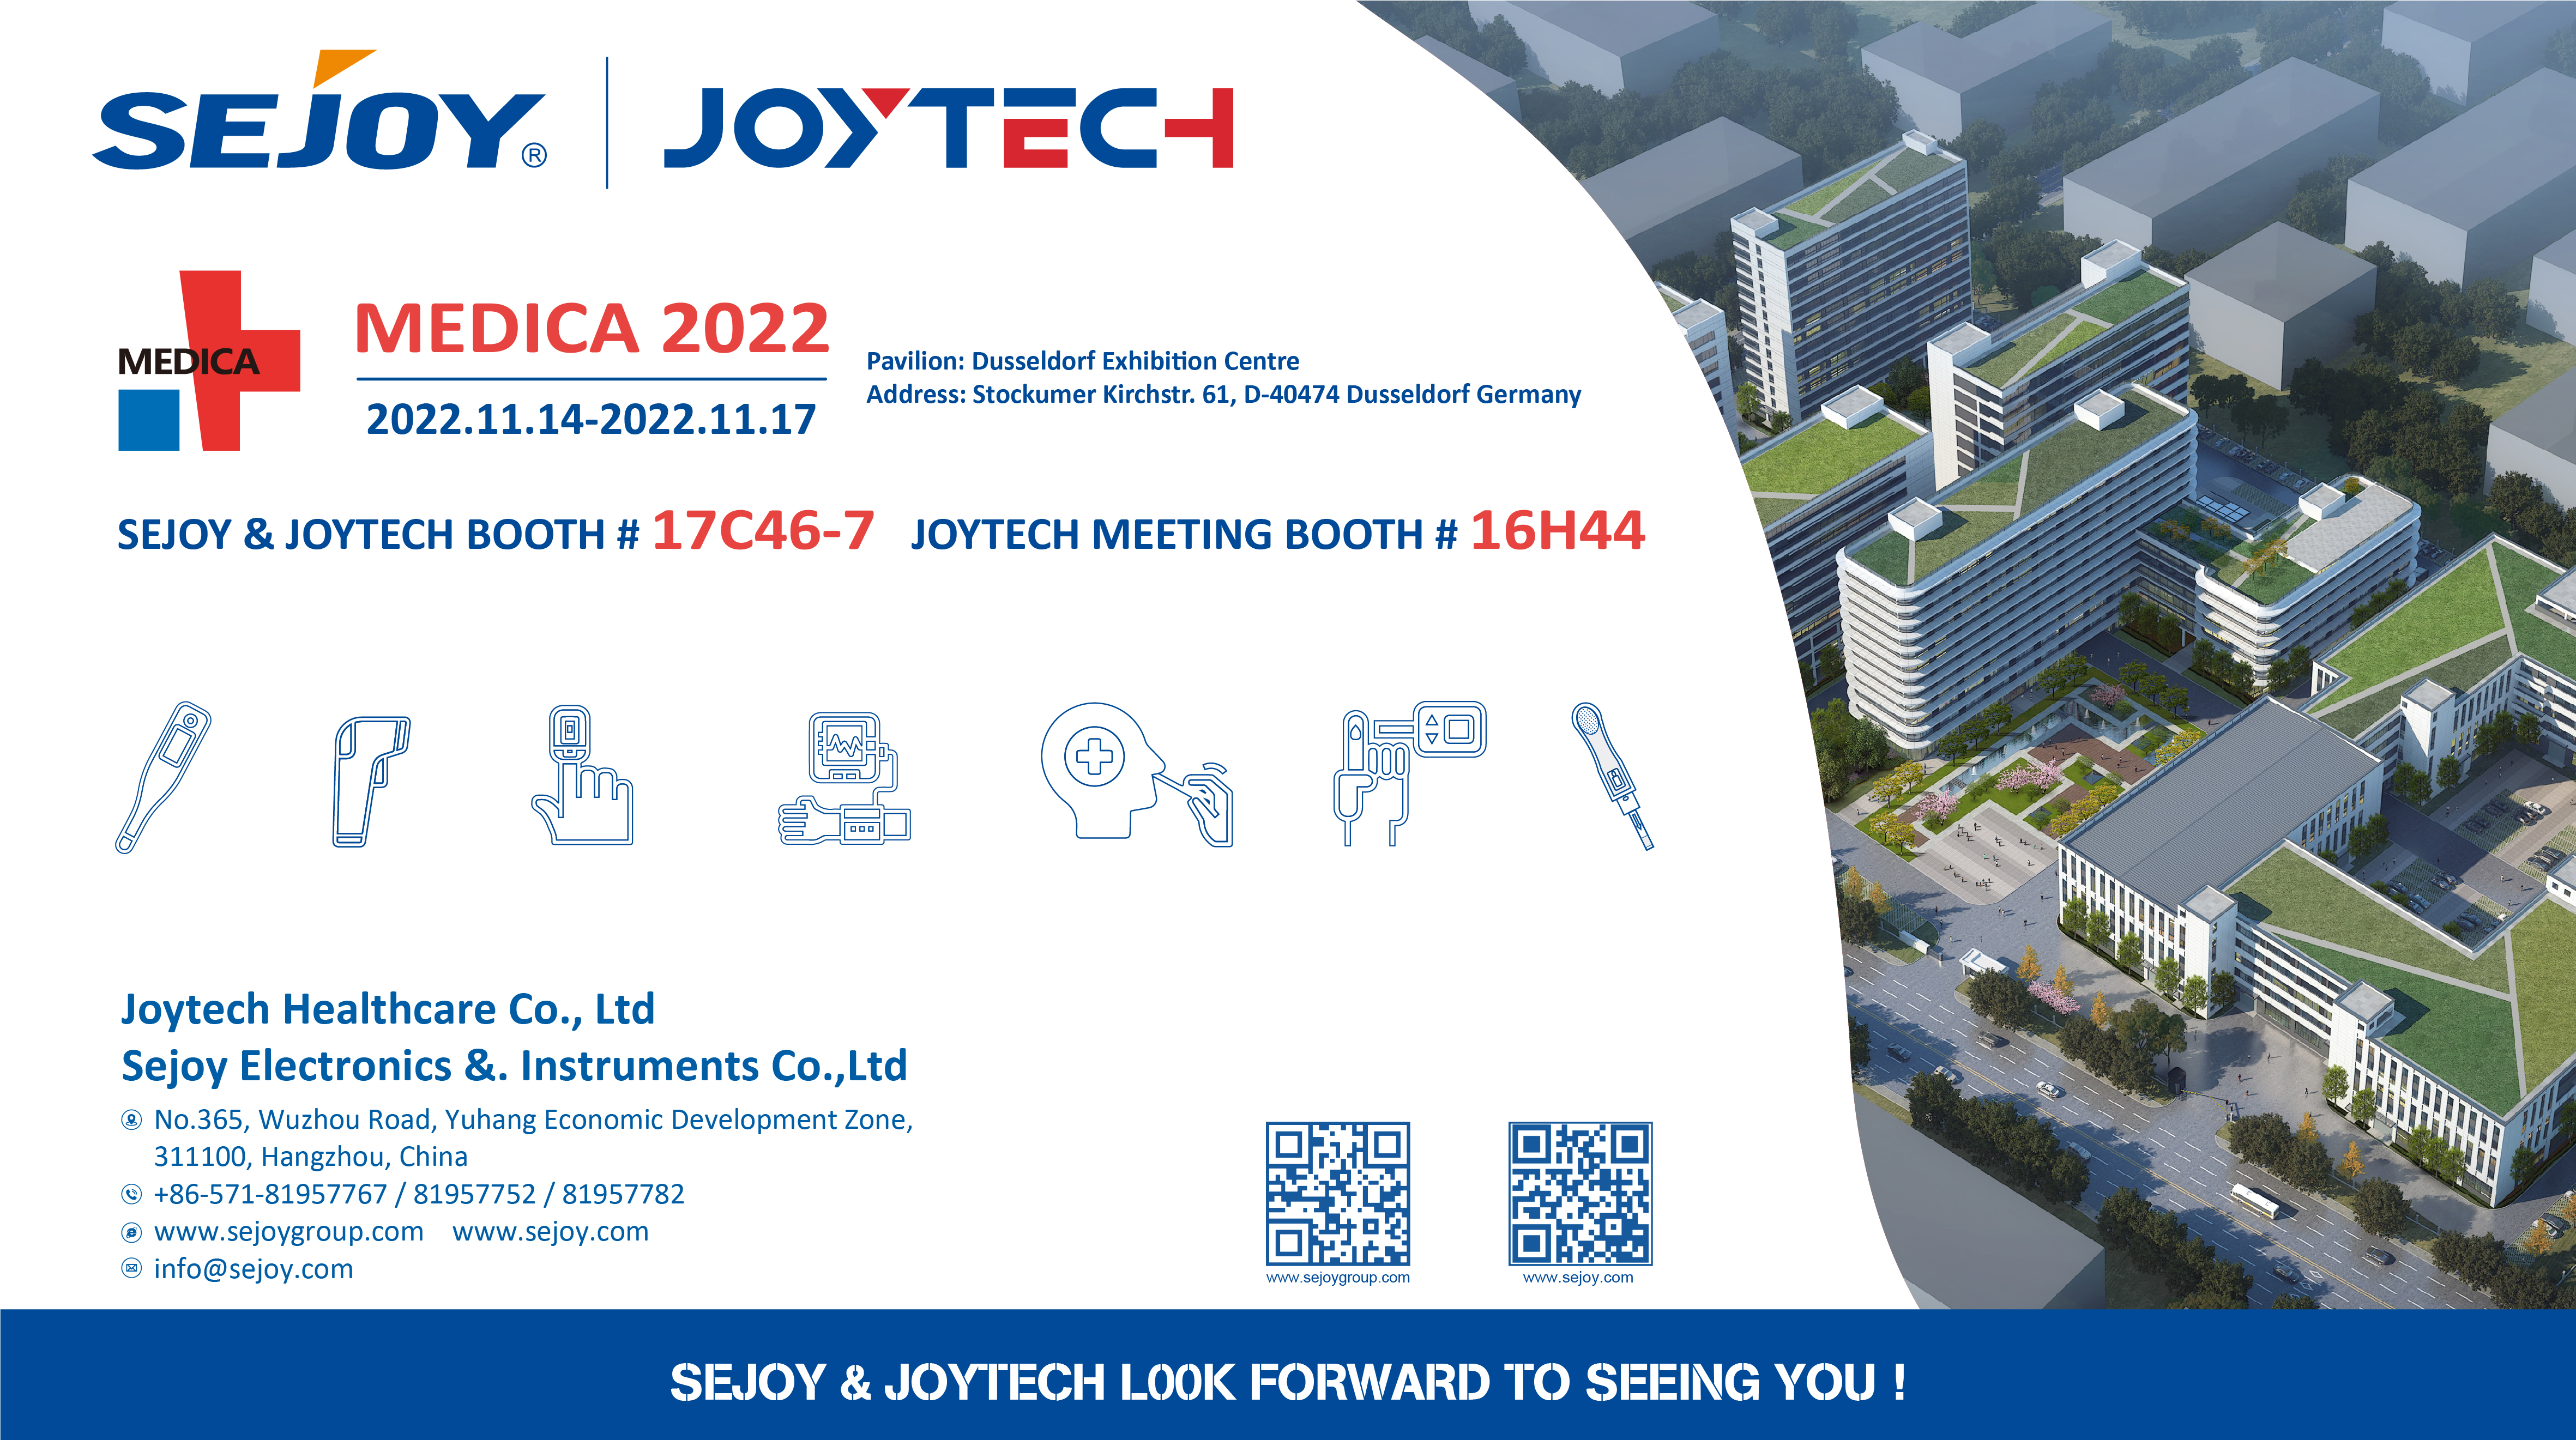 Anteprima della fiera Joytech per la seconda metà dell'anno 2022